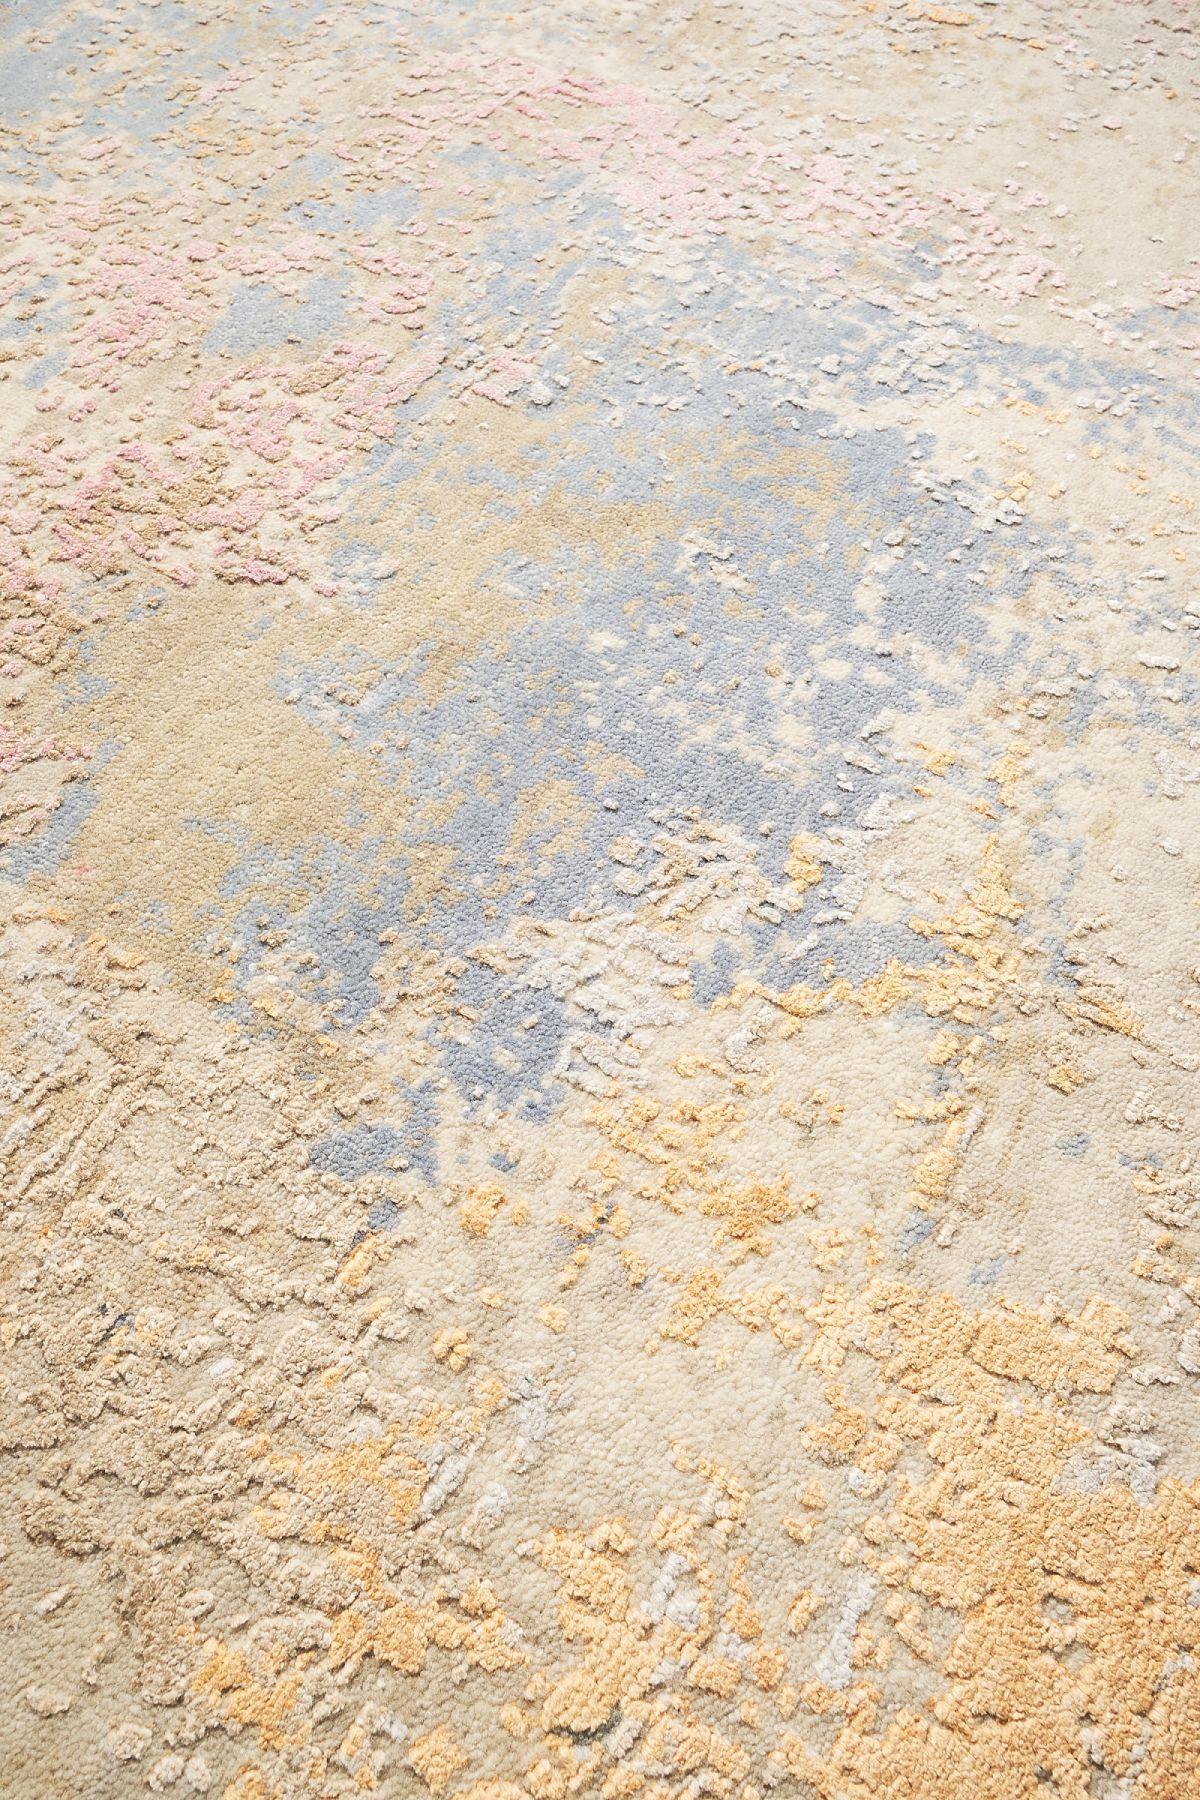 Un beau tapis coloré du motif Wheat Field, réalisé dans les années 2000. Le tapis est fait de laine et de soie nouées à la main. Ce qui rend ce tapis unique, c'est la superposition des couleurs, qui lui permet de s'adapter à tous les environnements.